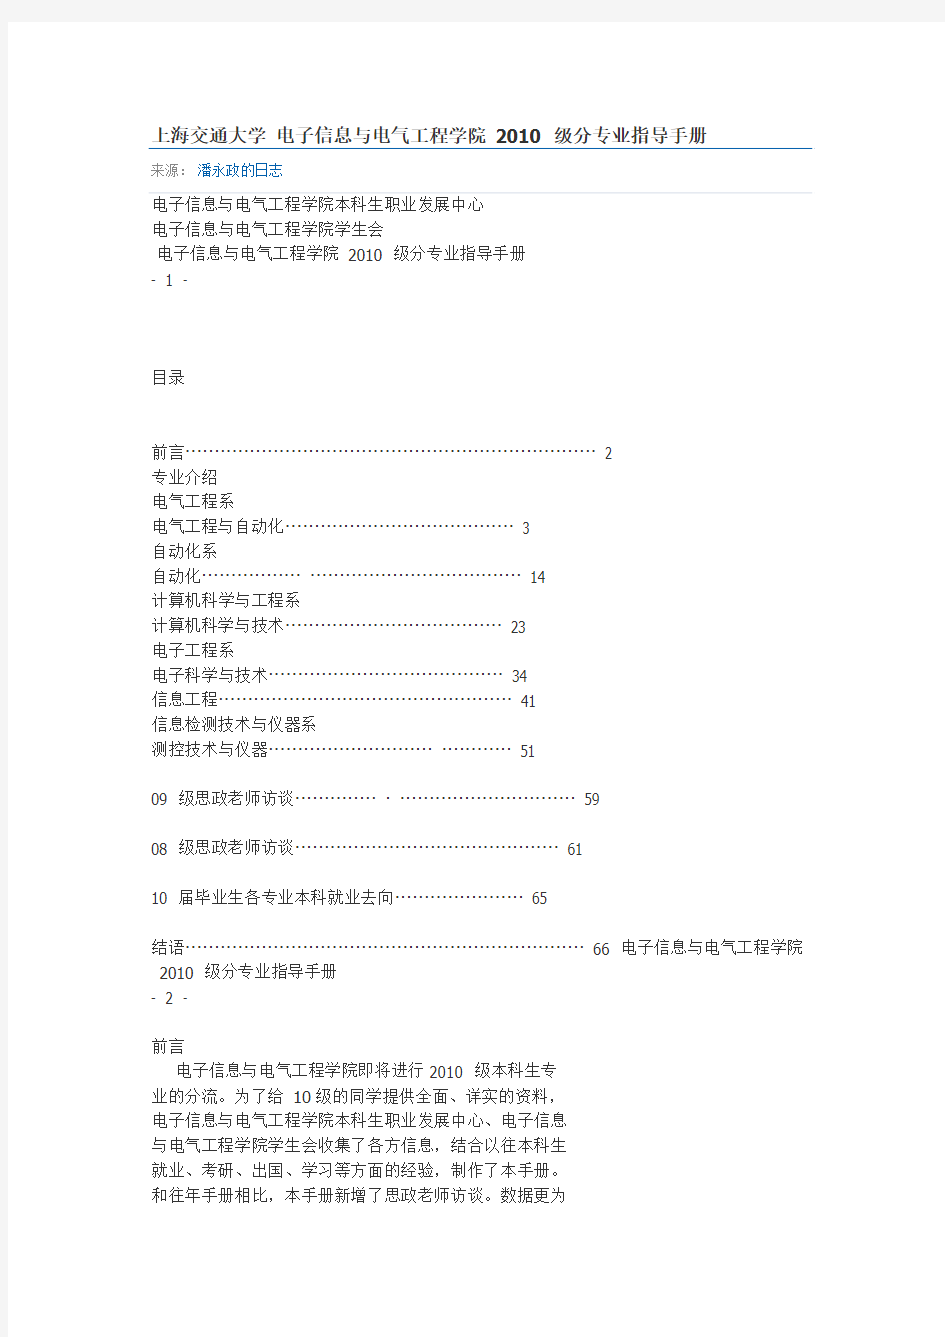 上海交通大学 电子信息与电气工程学院 2010 级分专业指导手册